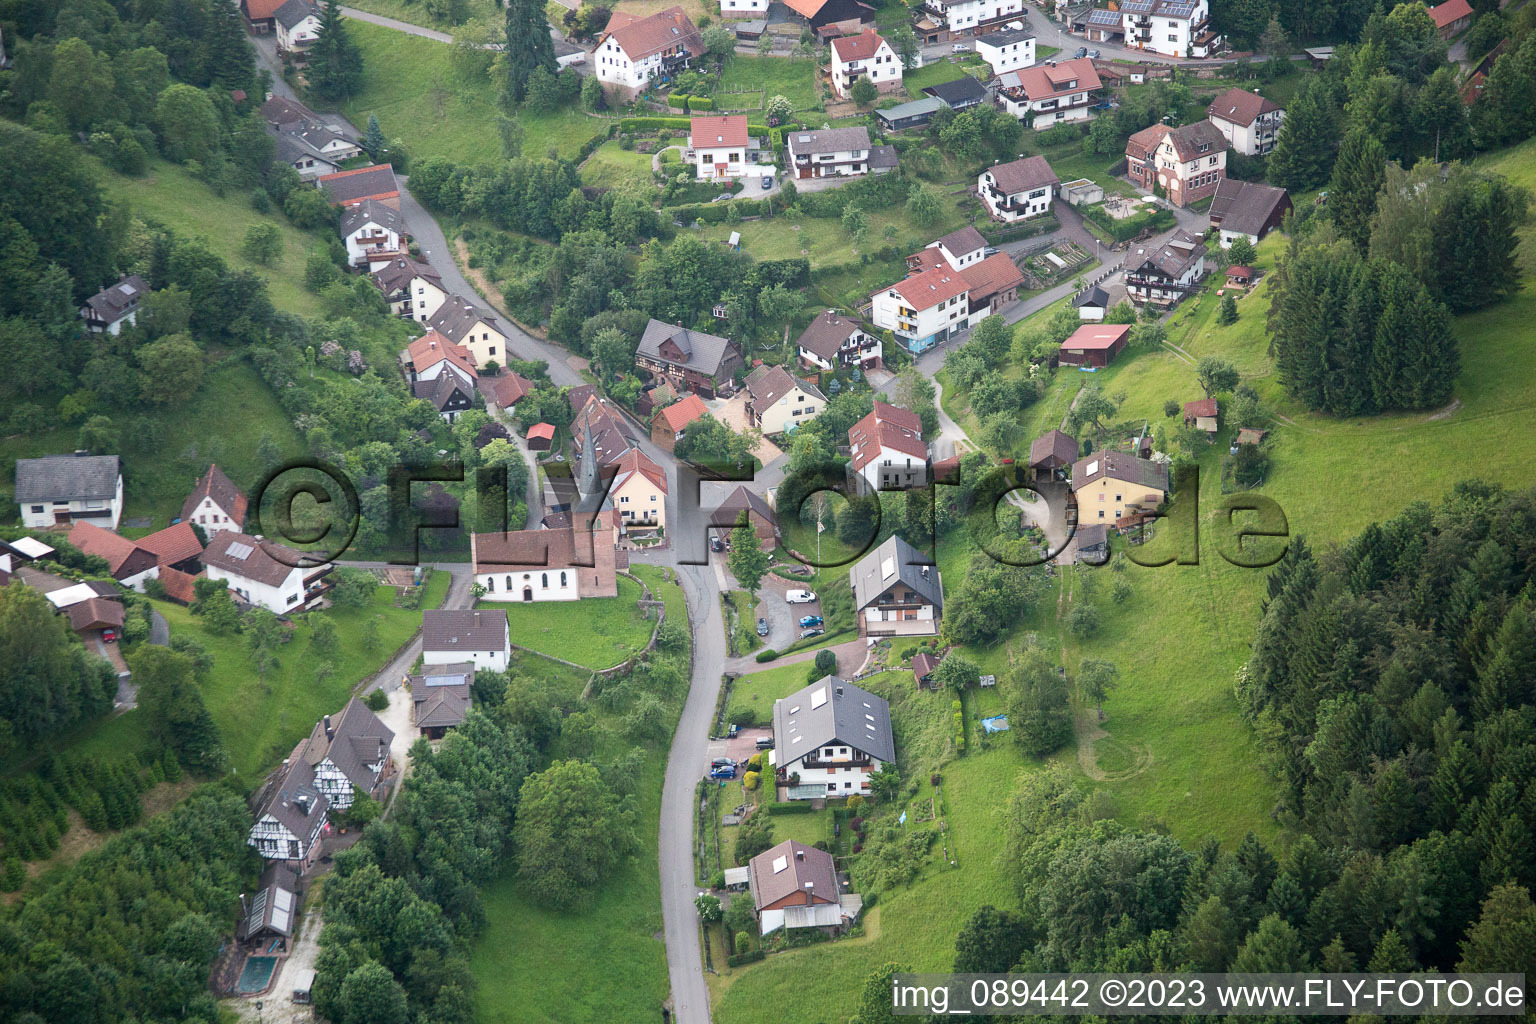 Brombach im Bundesland Baden-Württemberg, Deutschland von der Drohne aus gesehen